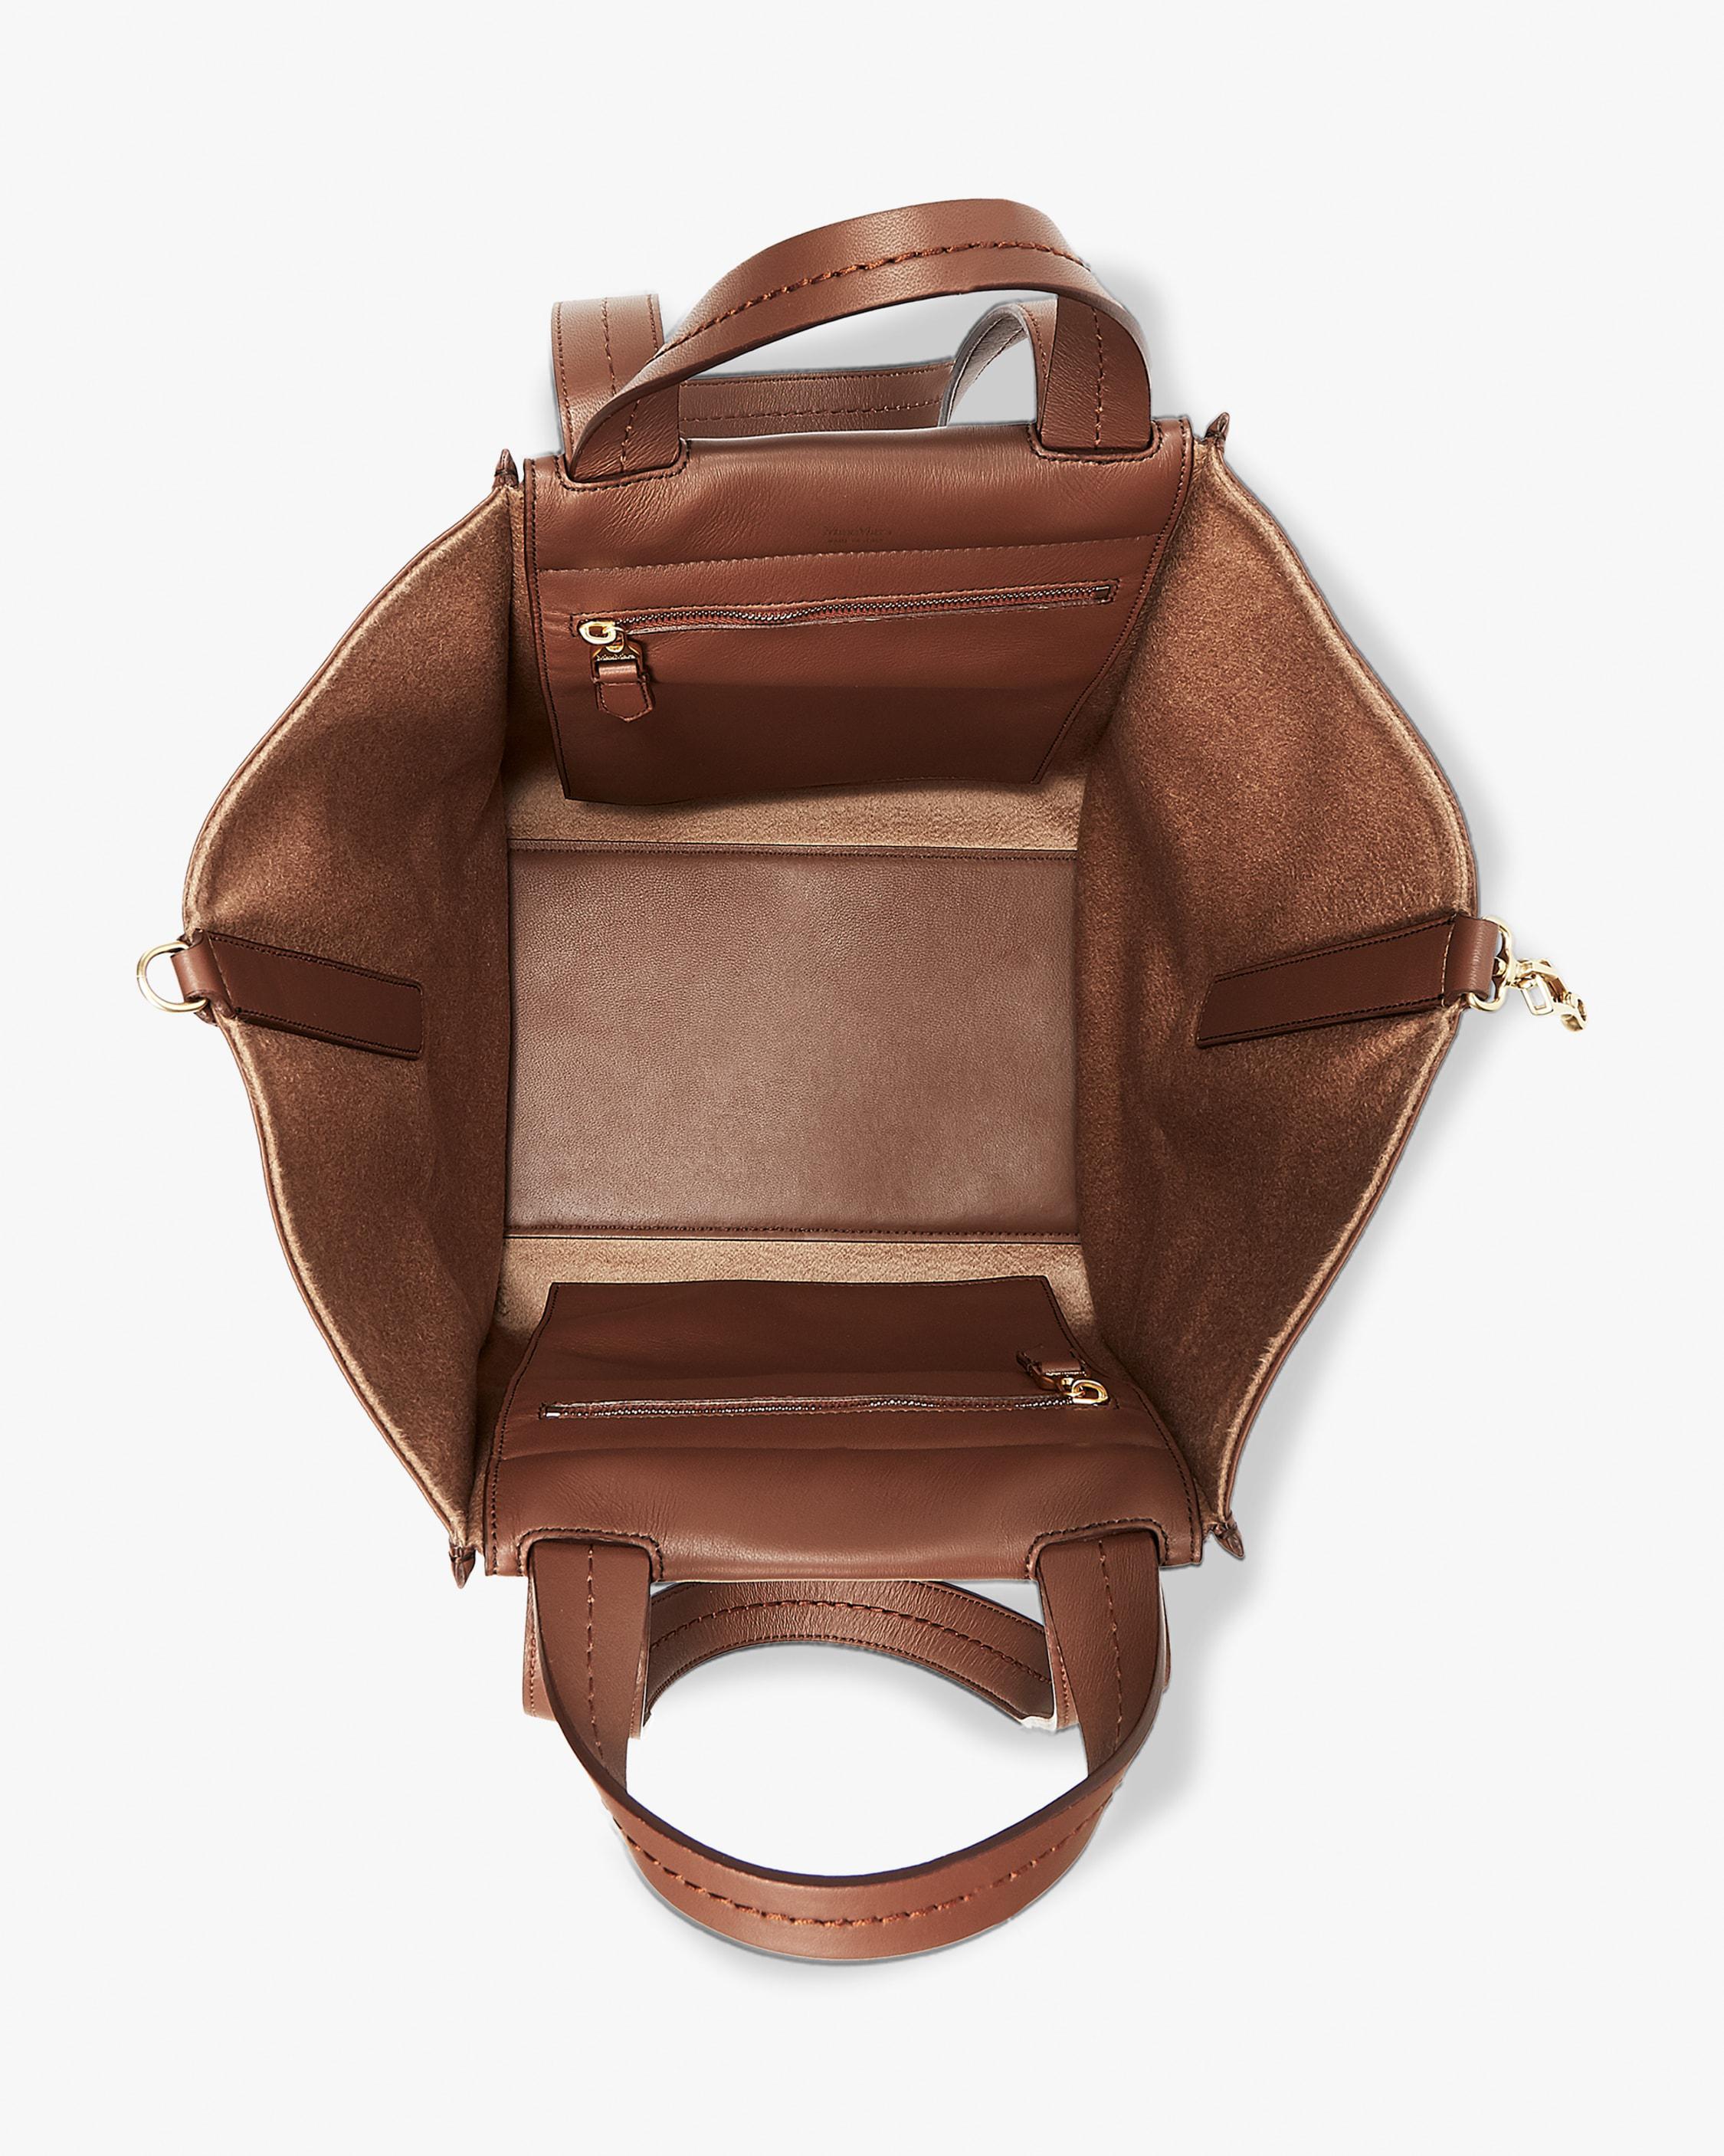 Max Mara Anita Reversible Leather Handbag in Sand (Brown) - Lyst